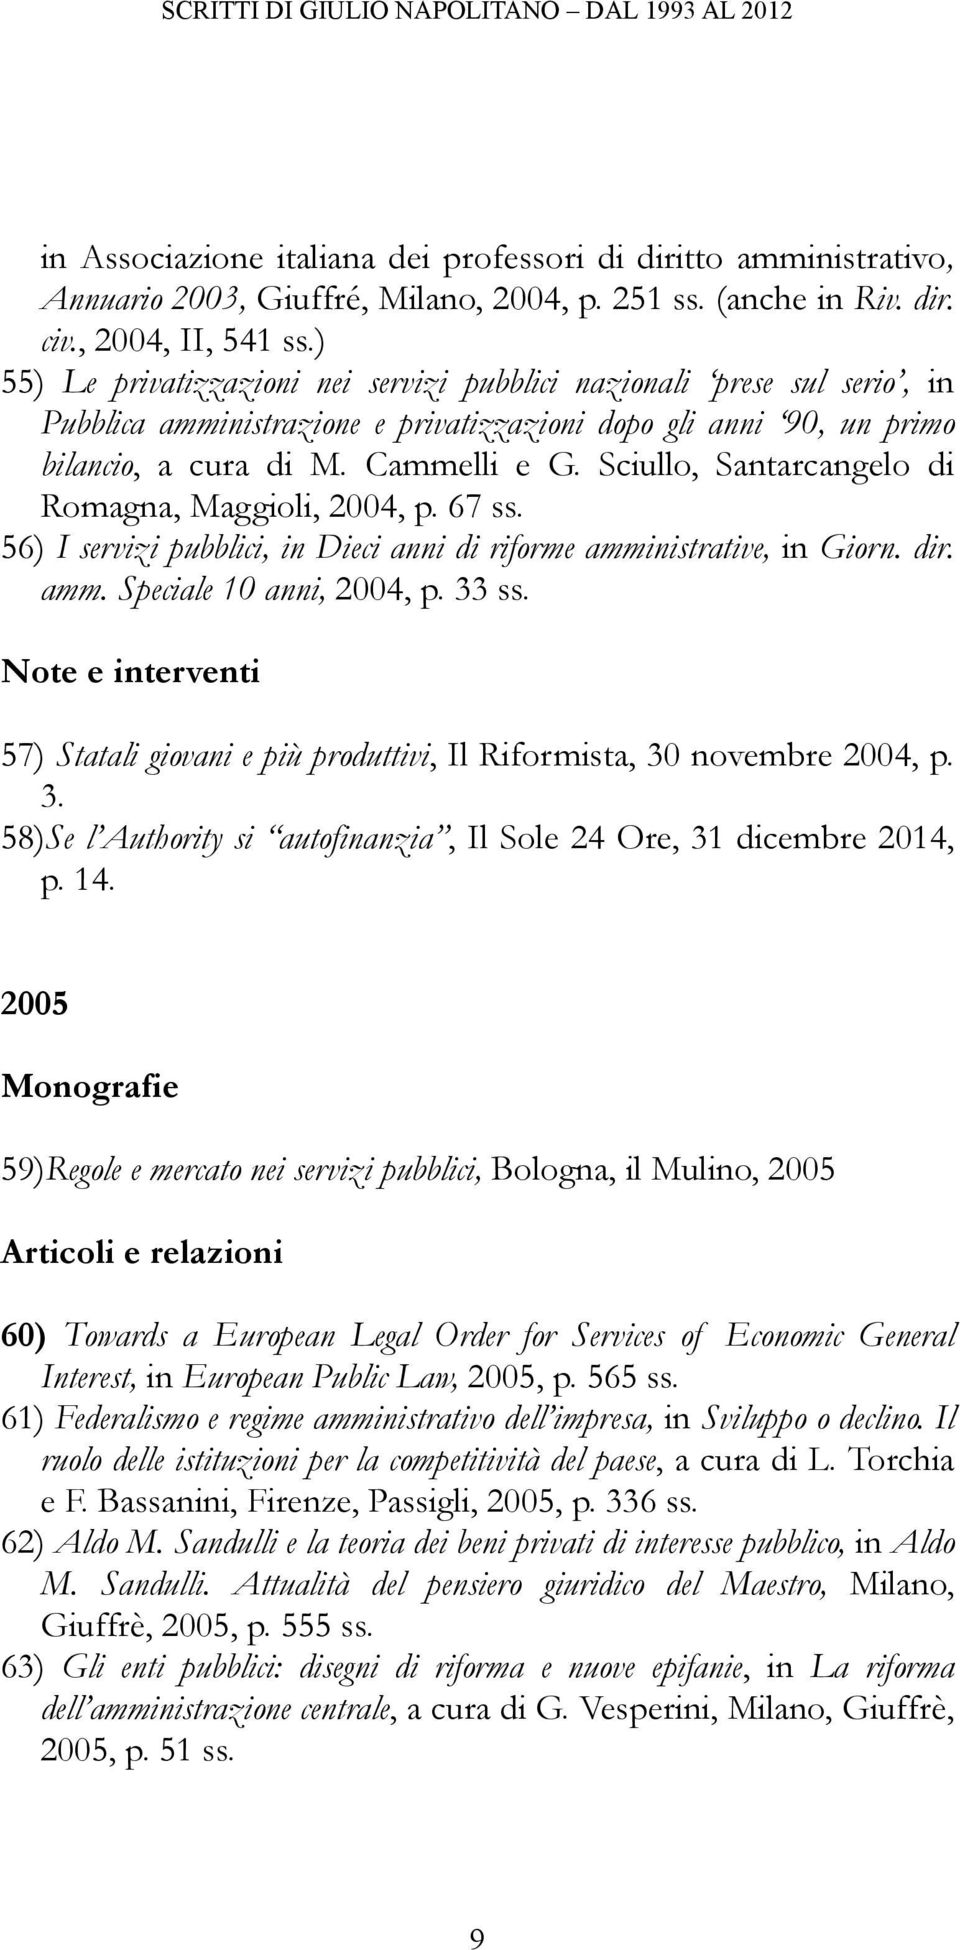 Sciullo, Santarcangelo di Romagna, Maggioli, 2004, p. 67 ss. 56) I servizi pubblici, in Dieci anni di riforme amministrative, in Giorn. dir. amm. Speciale 10 anni, 2004, p. 33 ss.